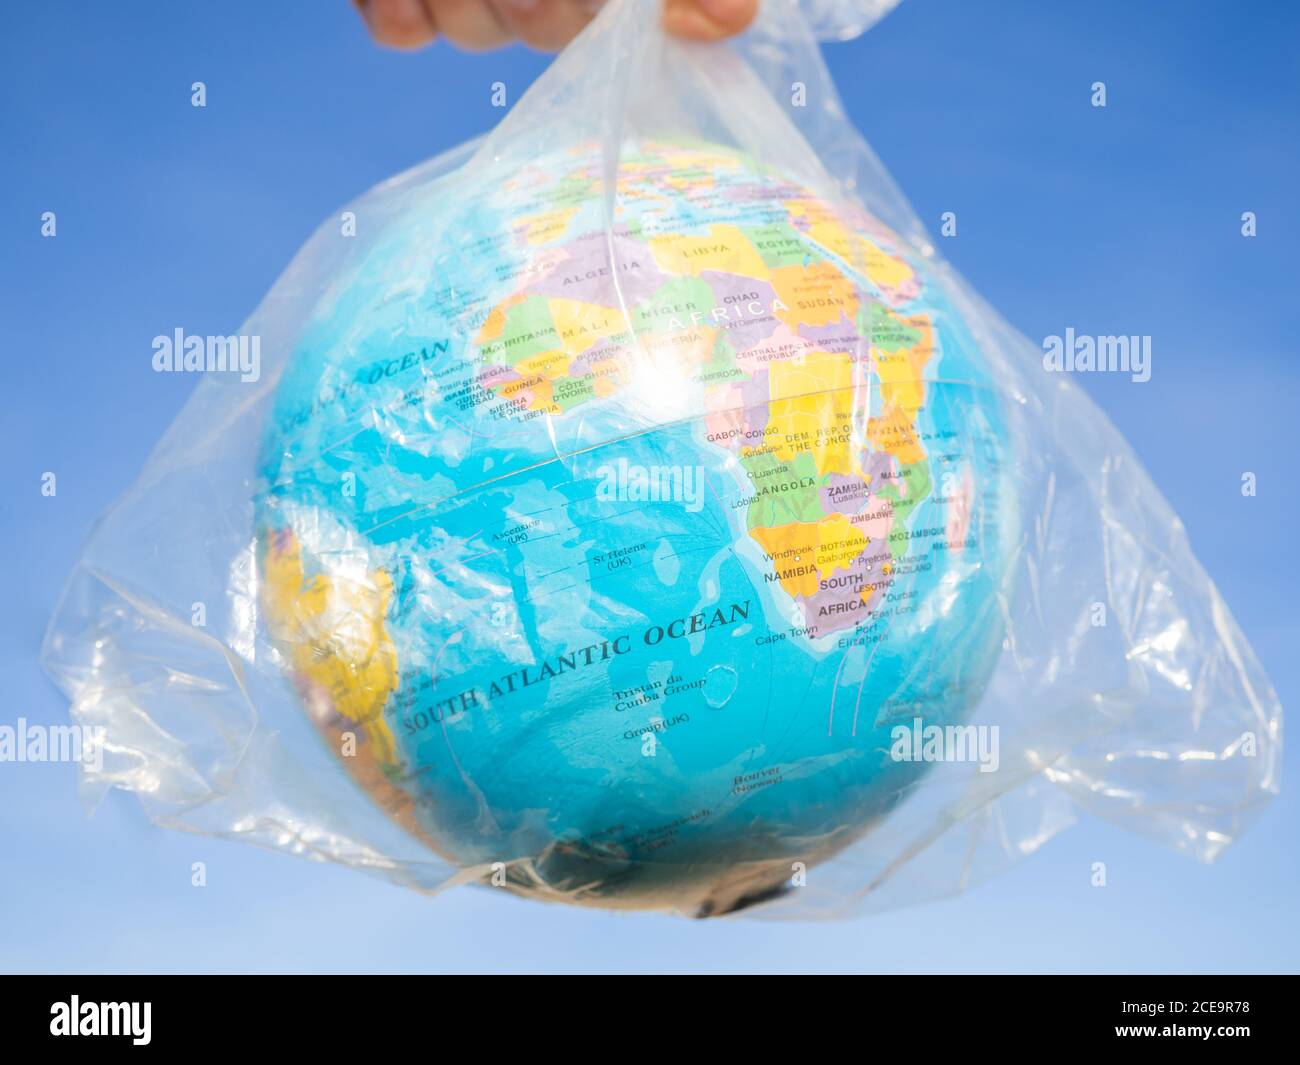 Une personne avec un globe terrestre ou la planète Terre dans ses mains à l'intérieur d'un sac en plastique. Ecology concept Banque D'Images